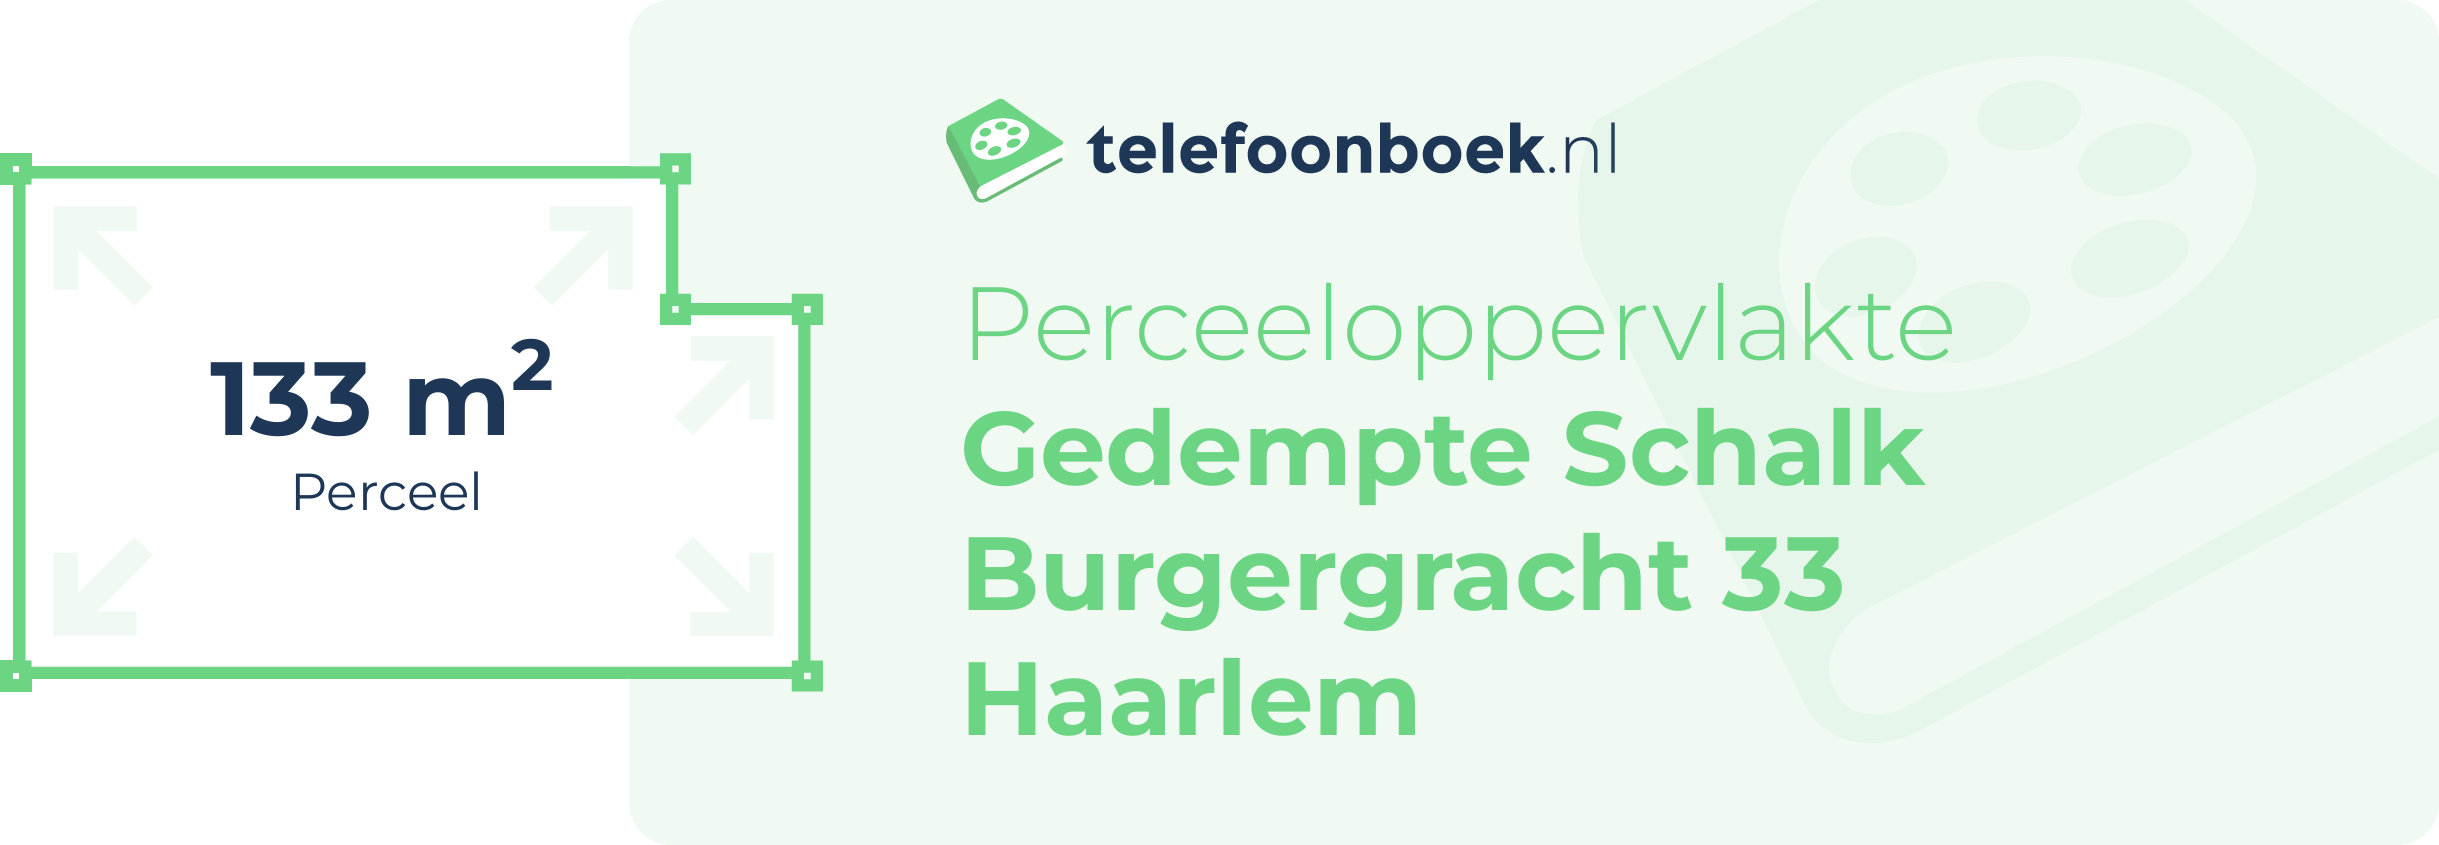 Perceeloppervlakte Gedempte Schalk Burgergracht 33 Haarlem